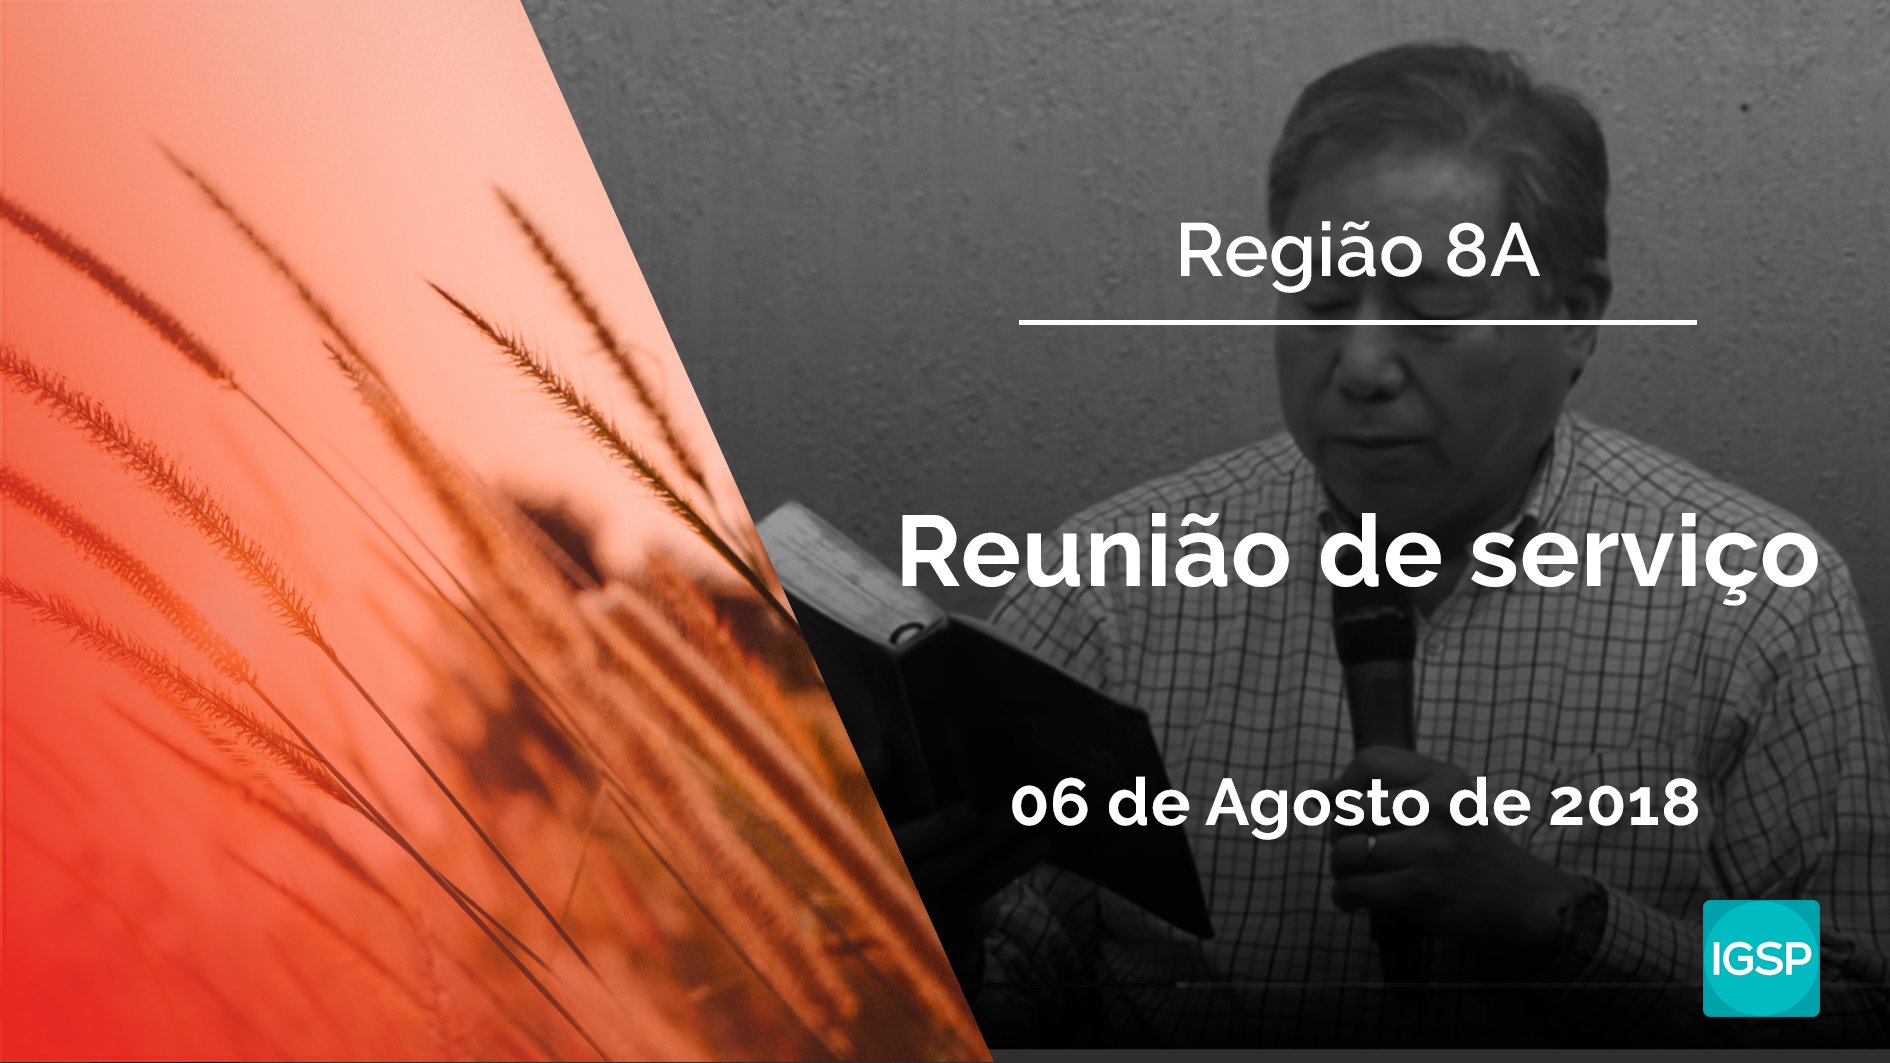 You are currently viewing Reunião de Serviço da Região 8A – Agosto 2018